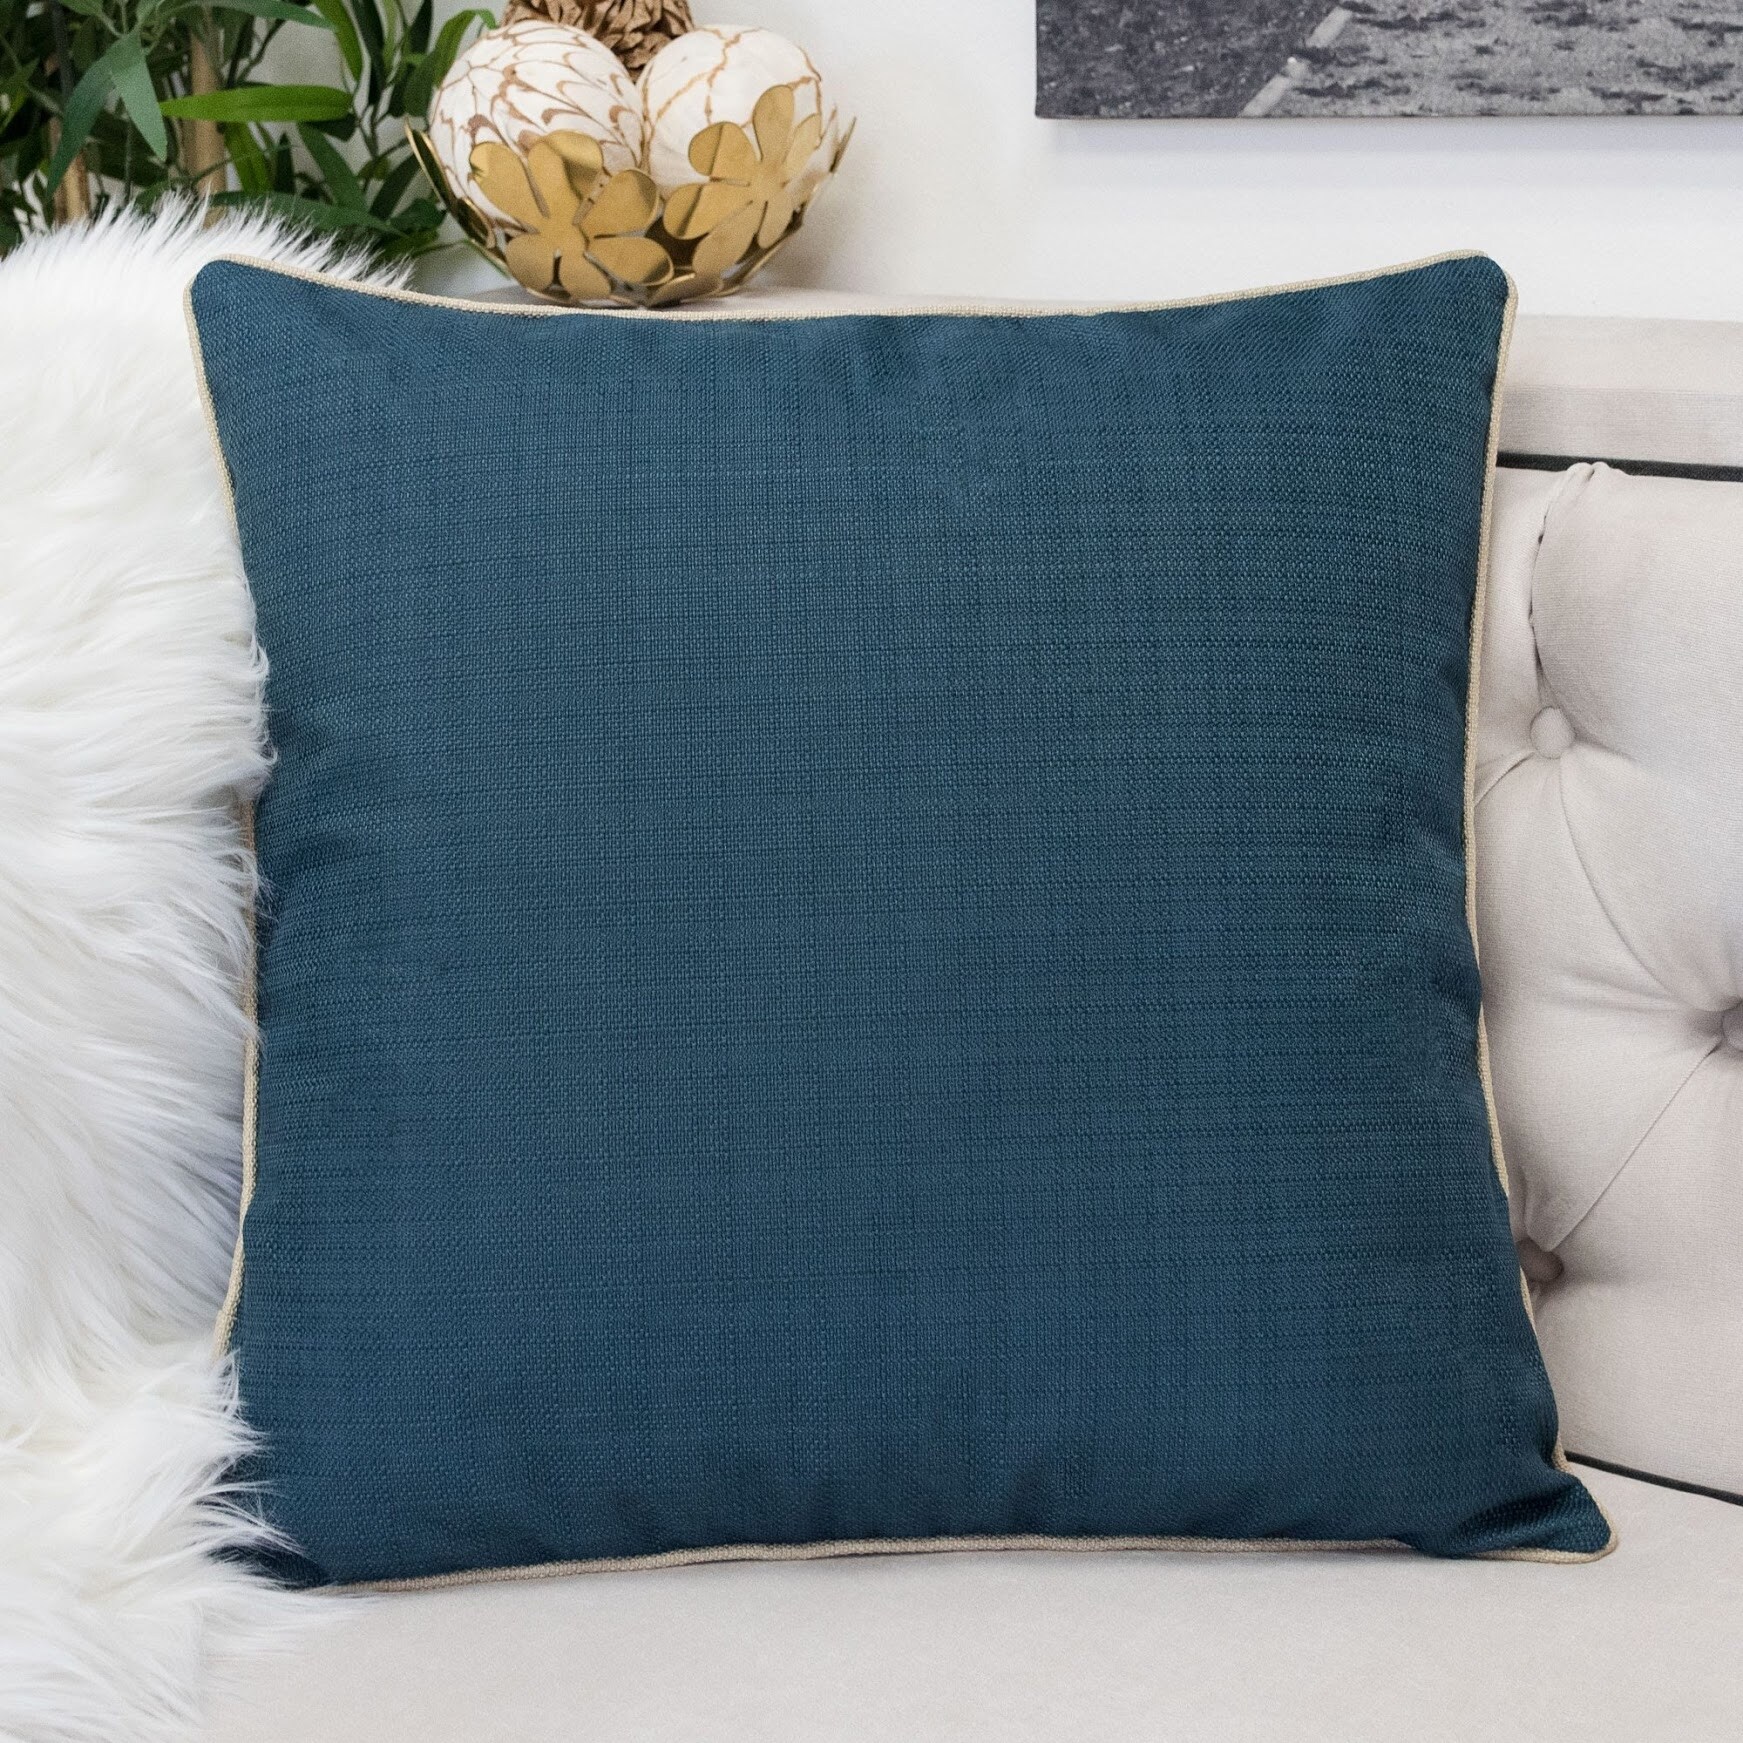 Homey Cozy Velvet Solid Throw Pillow Cover & Insert - Set of 2